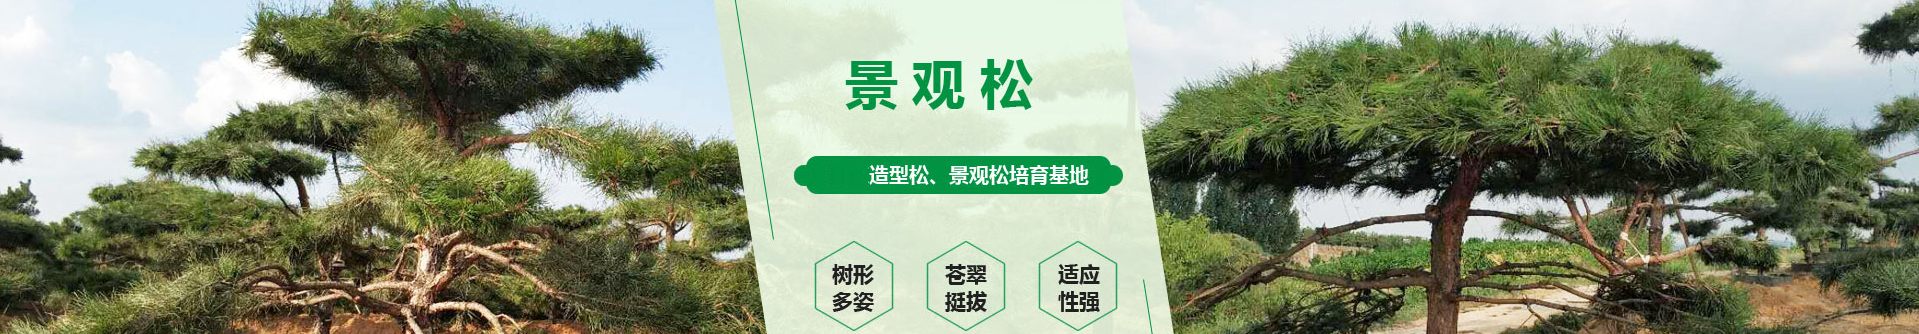 陕西栩林生态园林有限公司